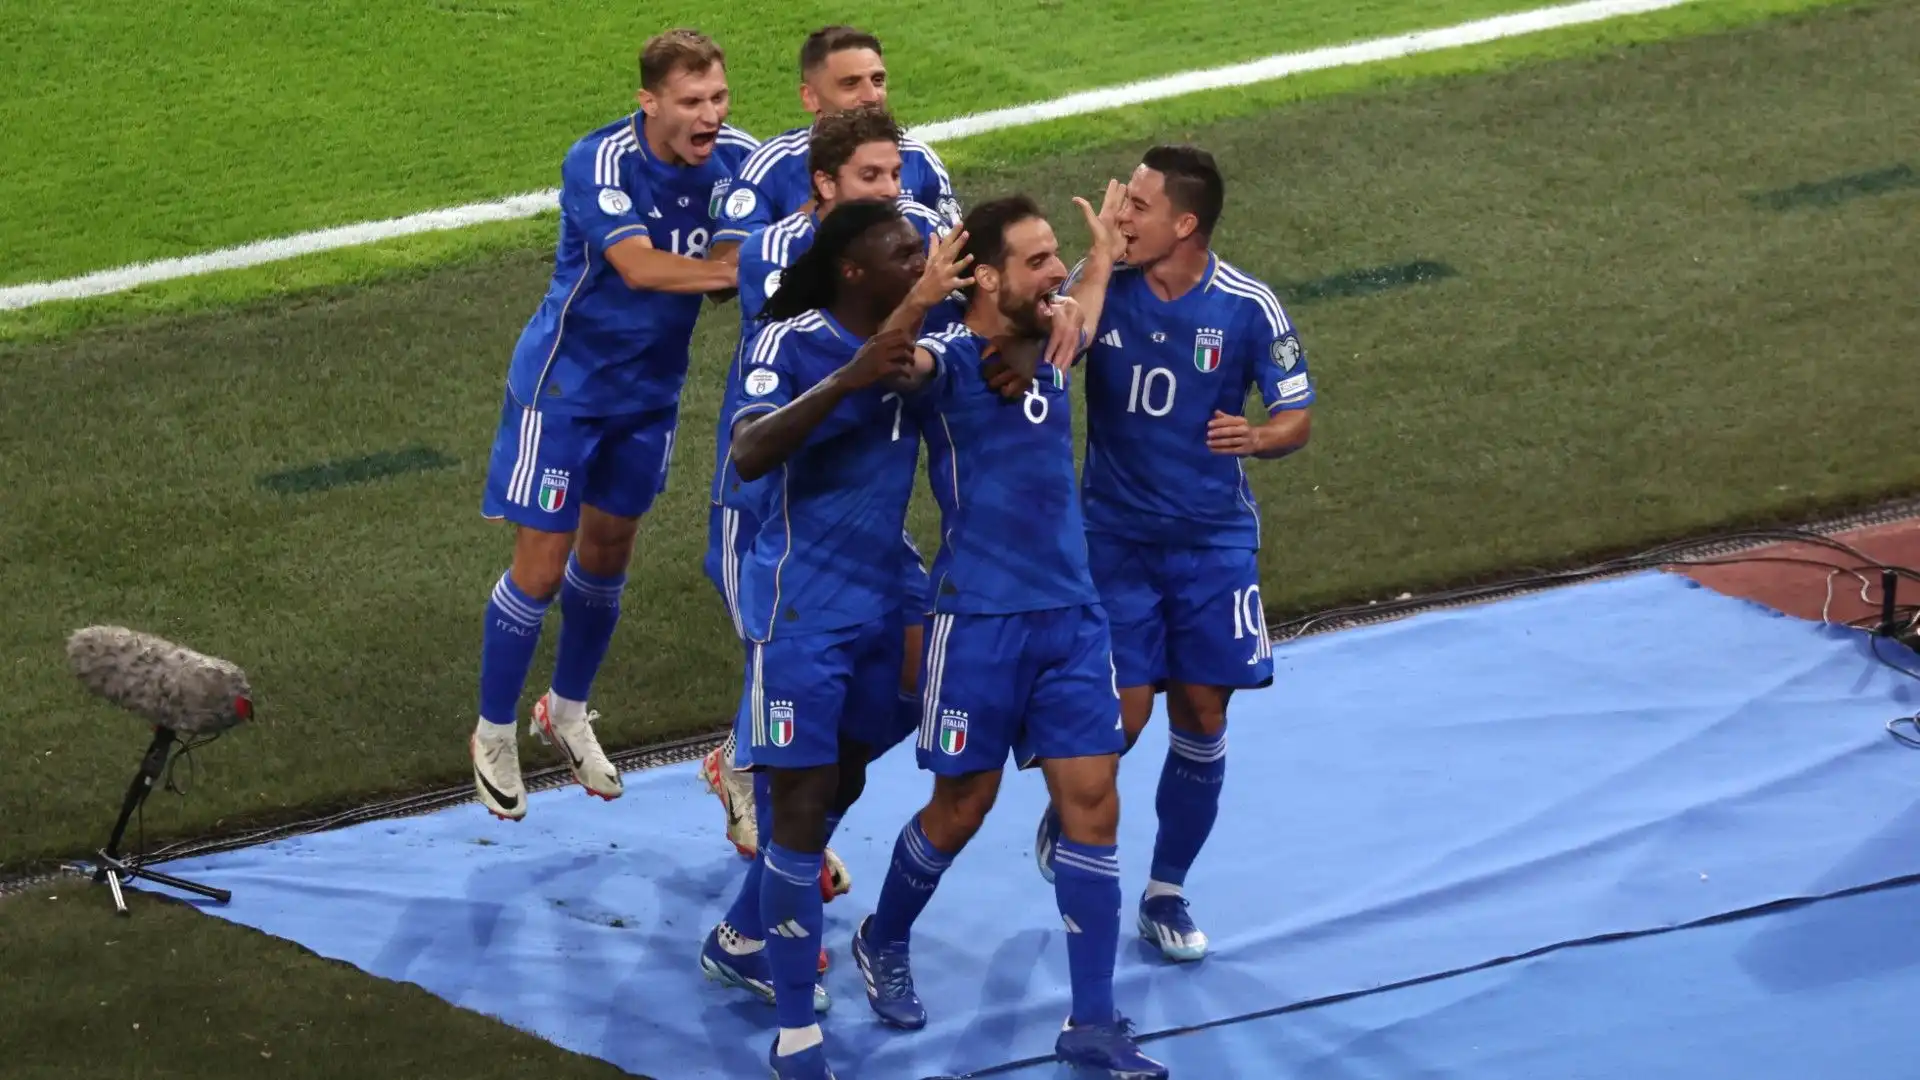 L'Italia, non perfetta nel primo tempo, è via via cresciuta fino al 4-0 finale firmato Frattesi.